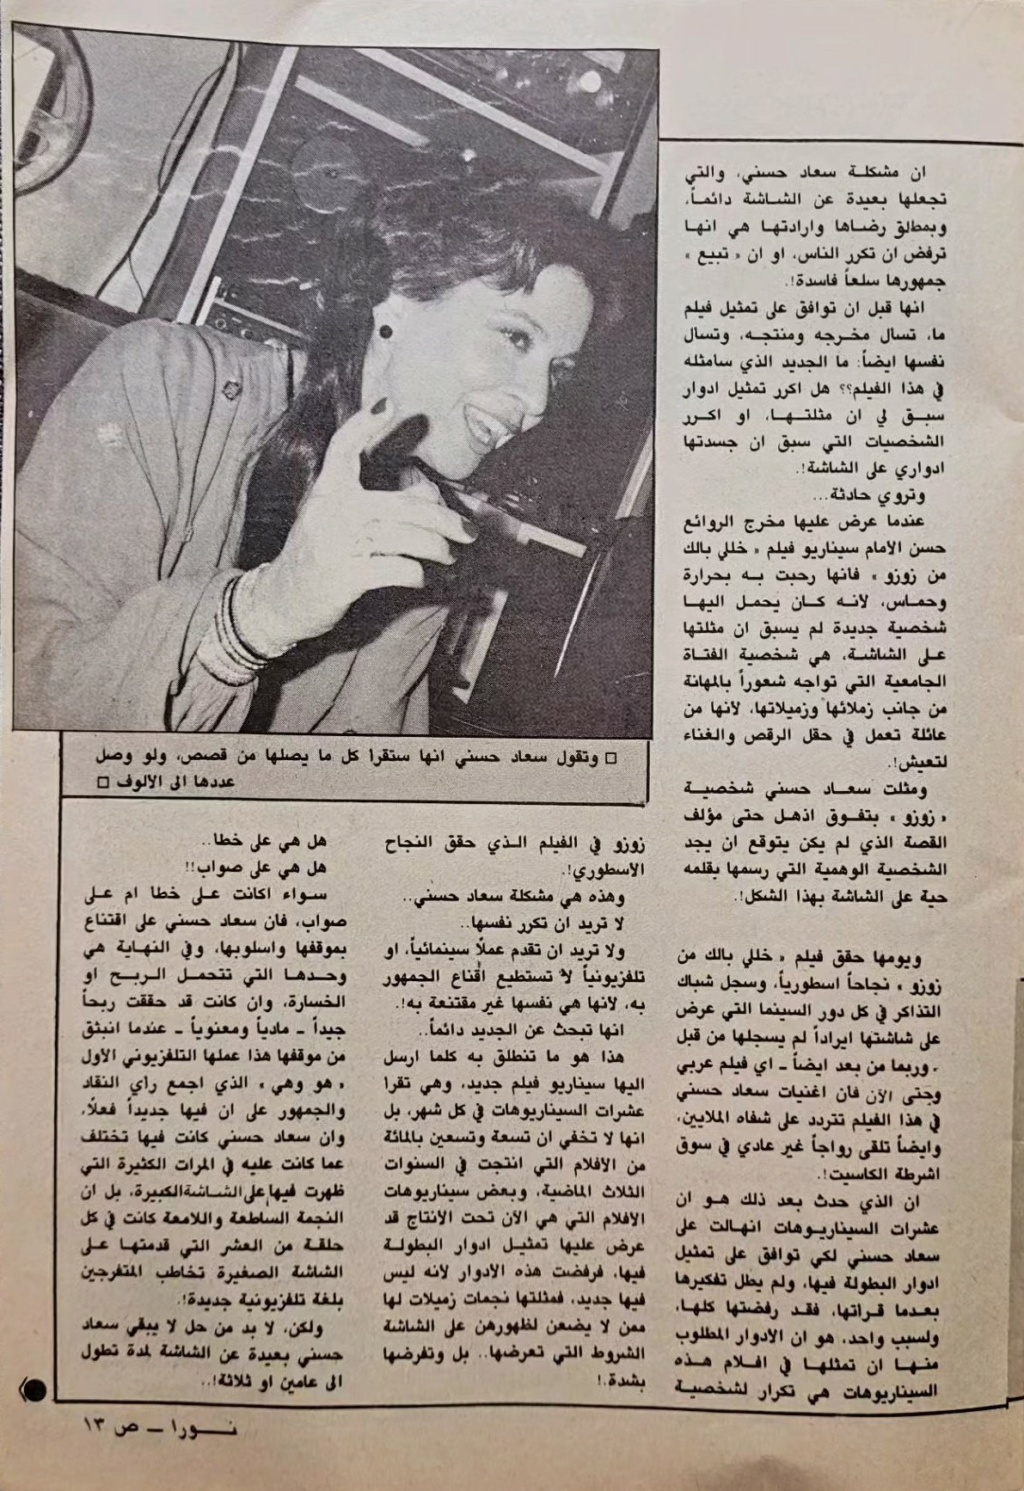 حوار صحفي : سعاد حسني .. تنادي أهل الموهبة وتبحث عندهم عن الجديد من القصص ! 1985 م 2104